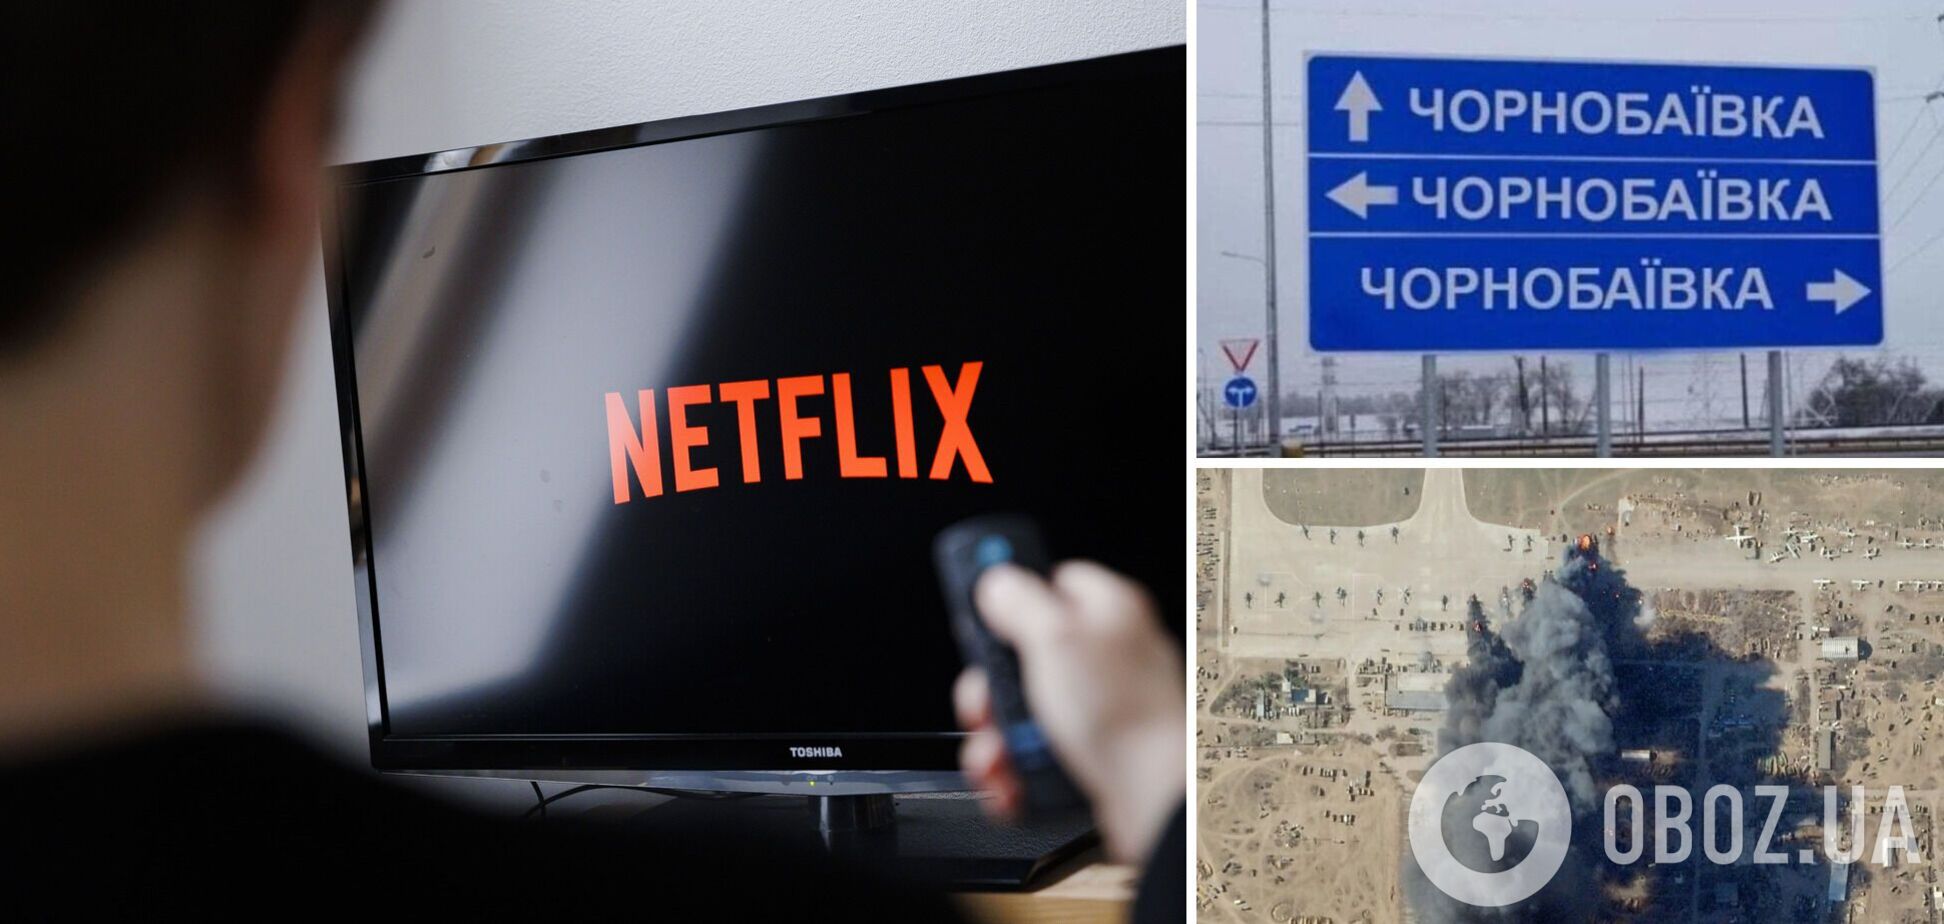 Ганебний розгром окупантів у Чорнобаївці висміяли у 'фільмі Netflix'